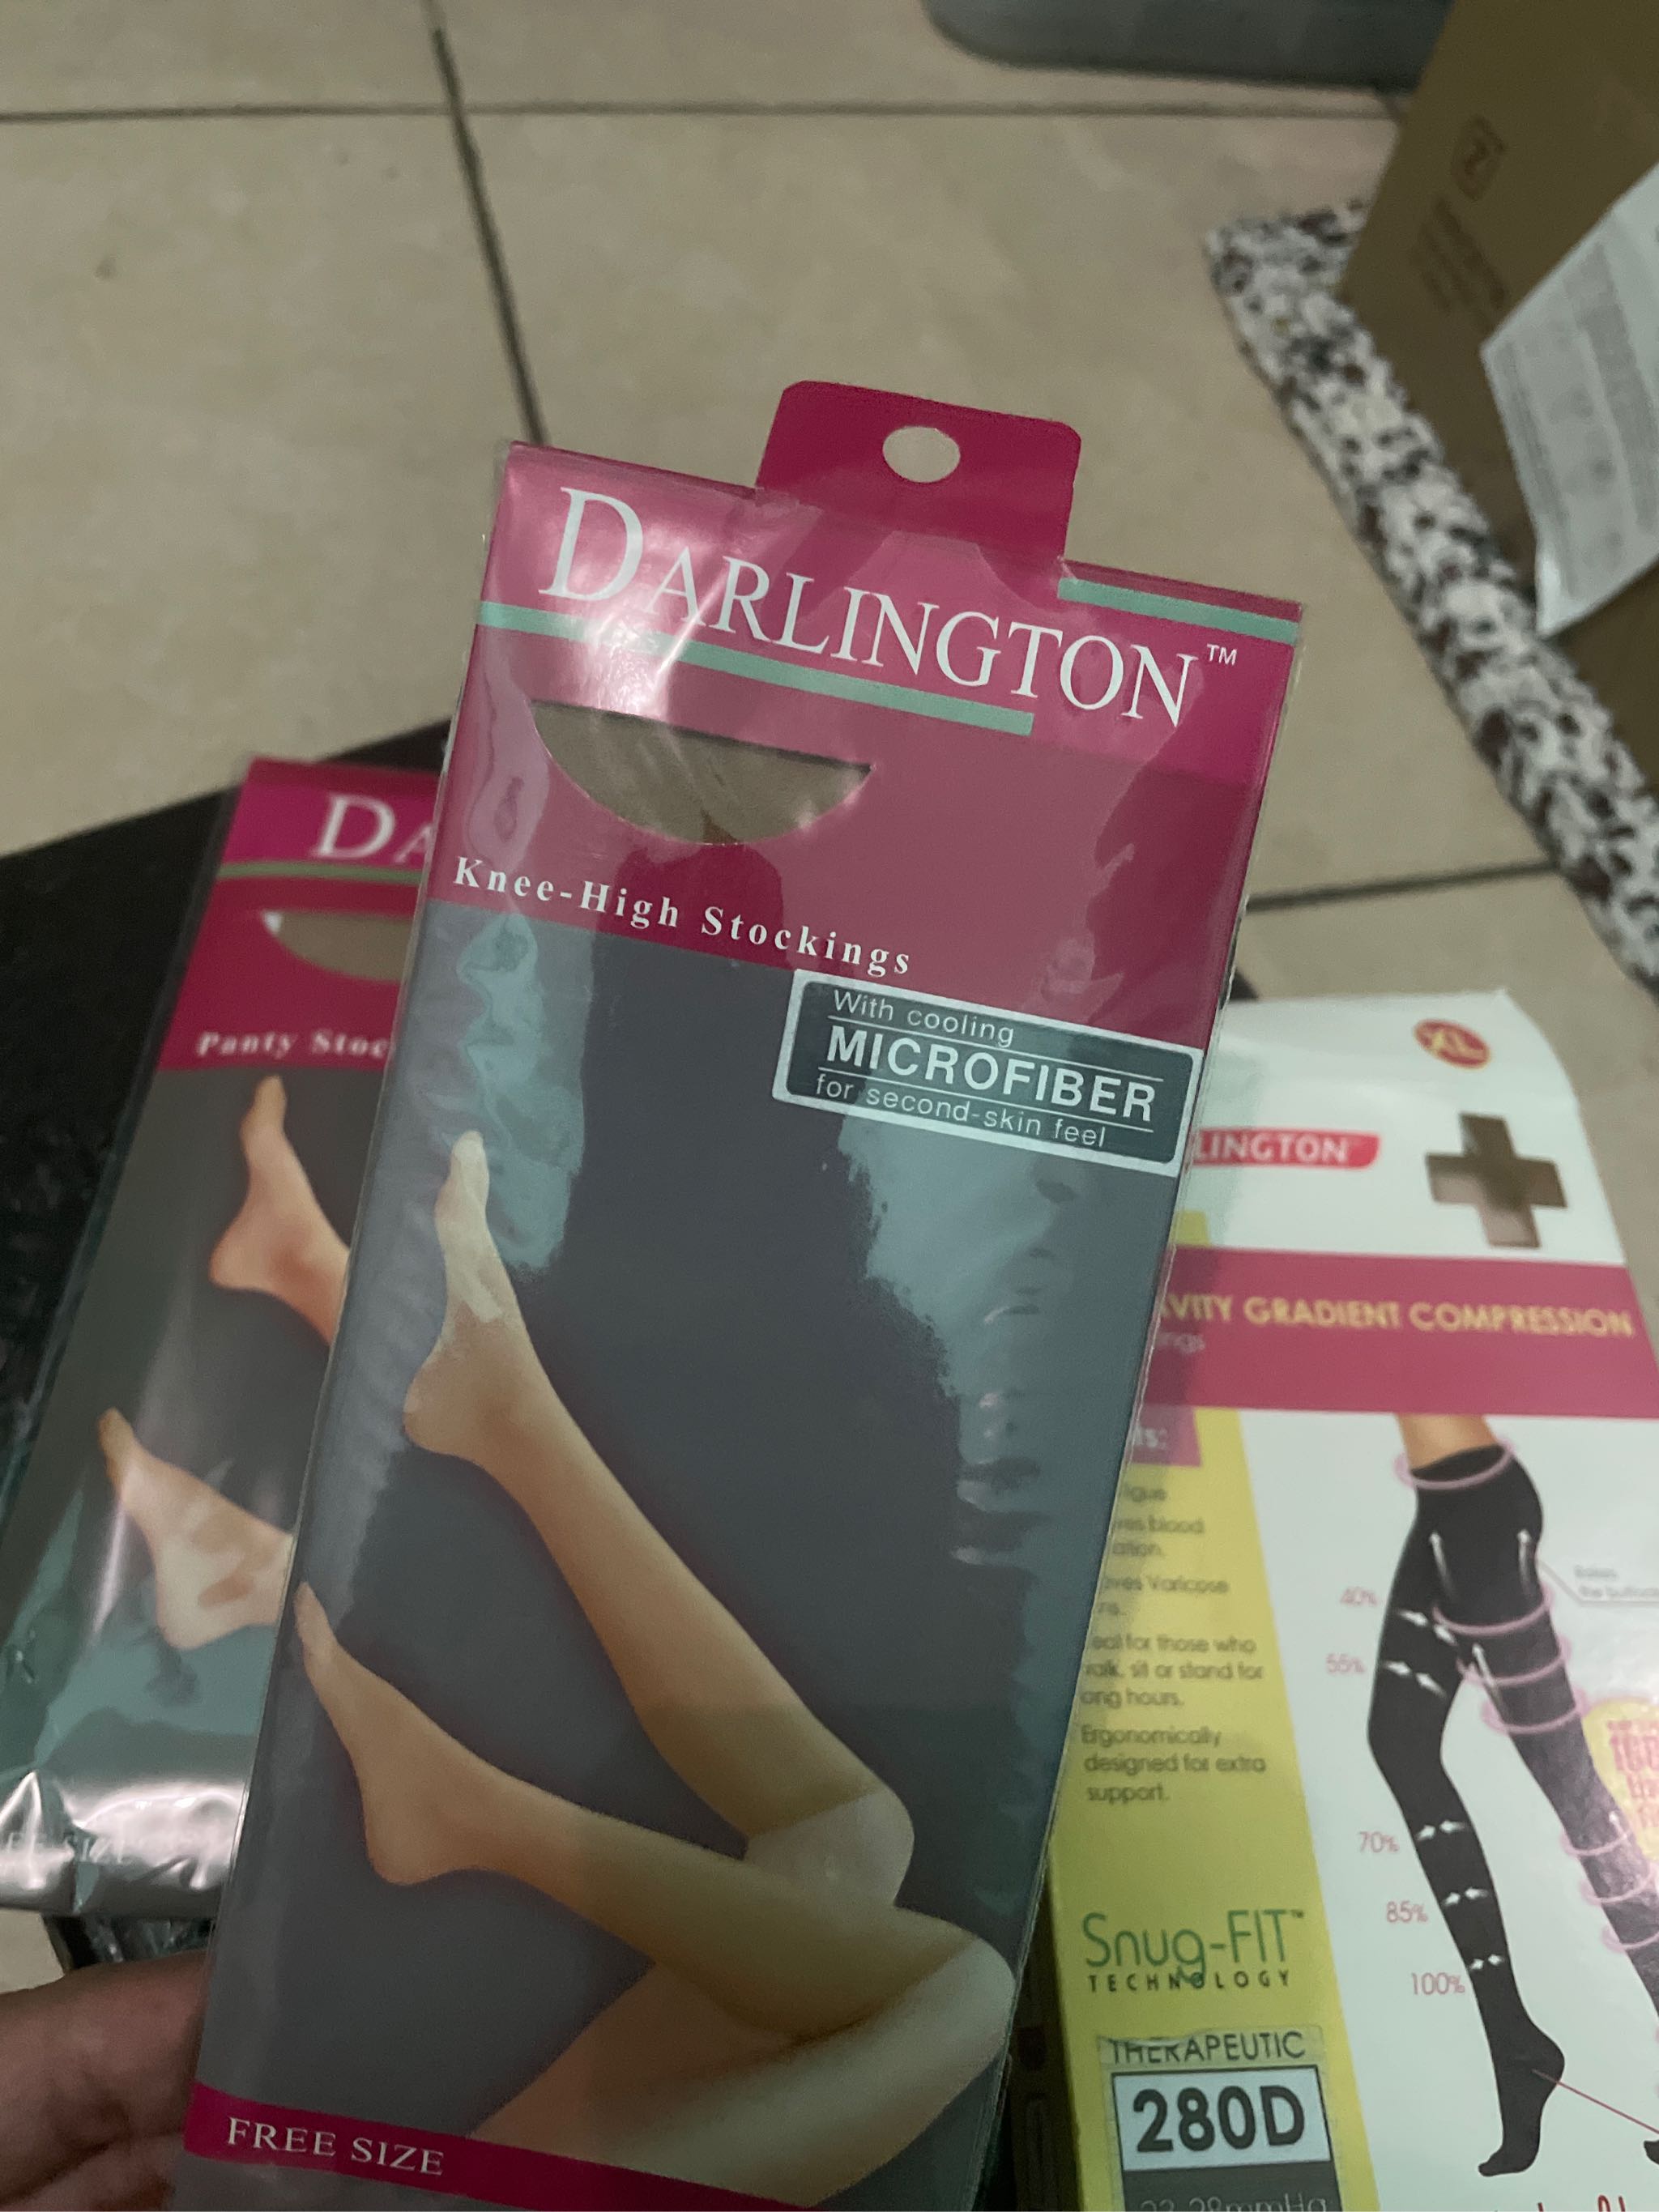 Darlington Ladies Stockings Microfiber Panty Hose